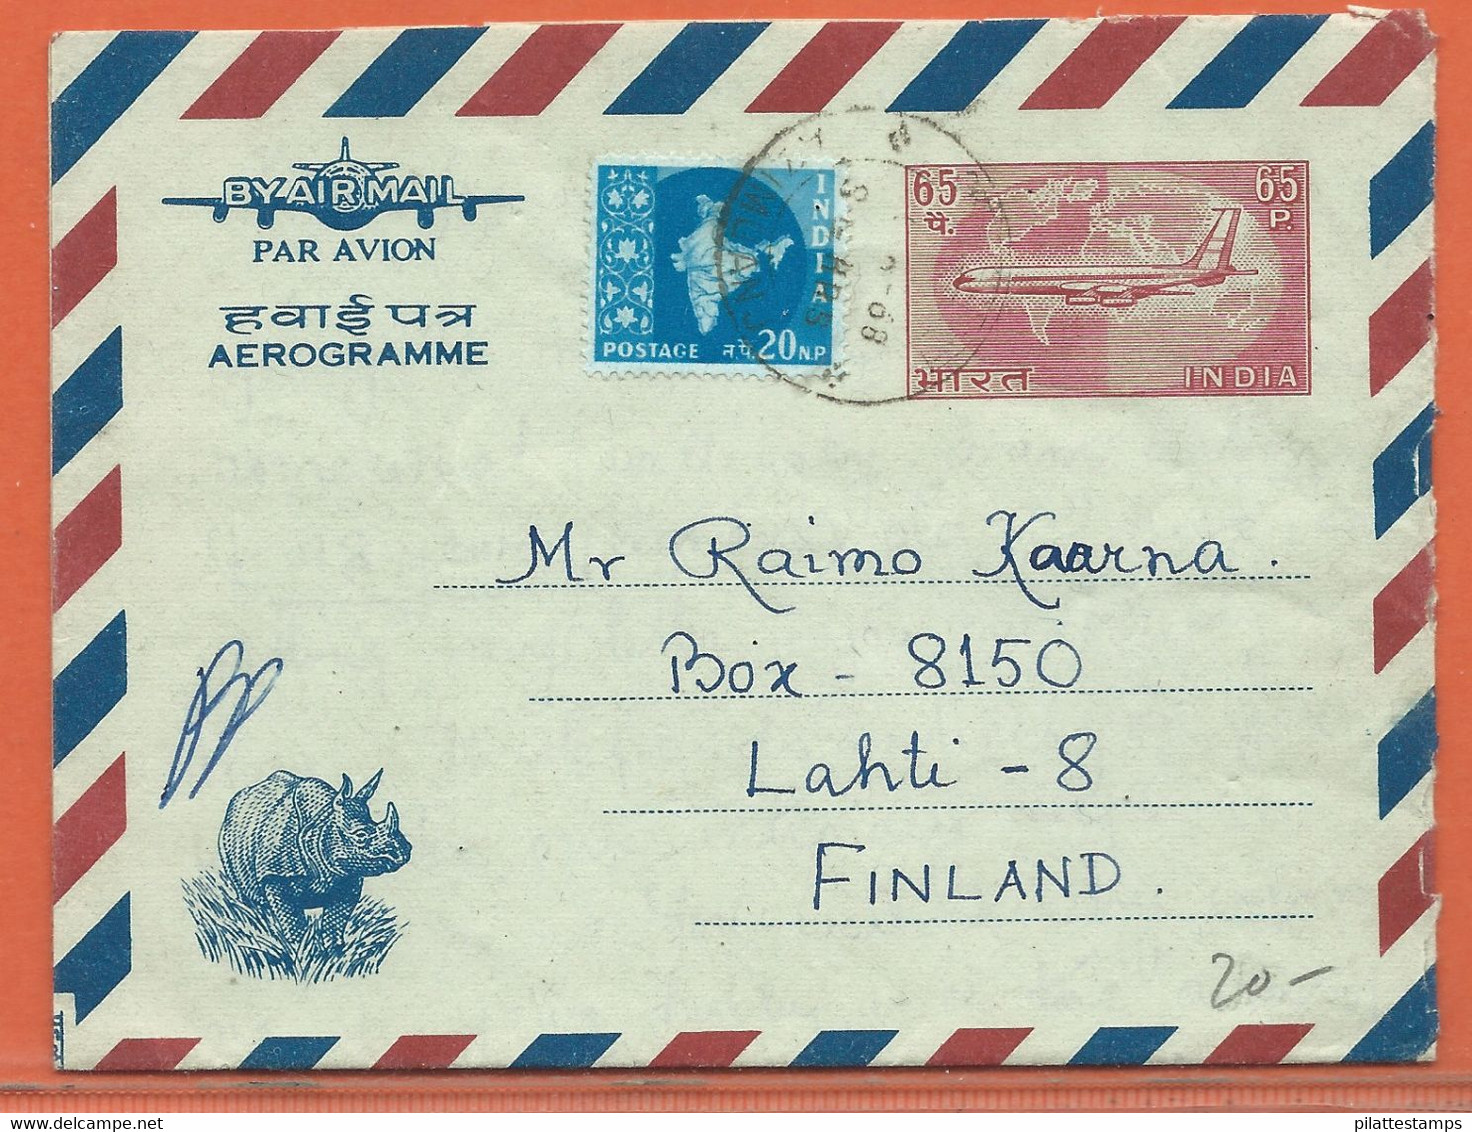 ANIMAUX RHINOCEROS INDE AEROGRAMME 65P DE 1968 - Kisten Für Briefmarken